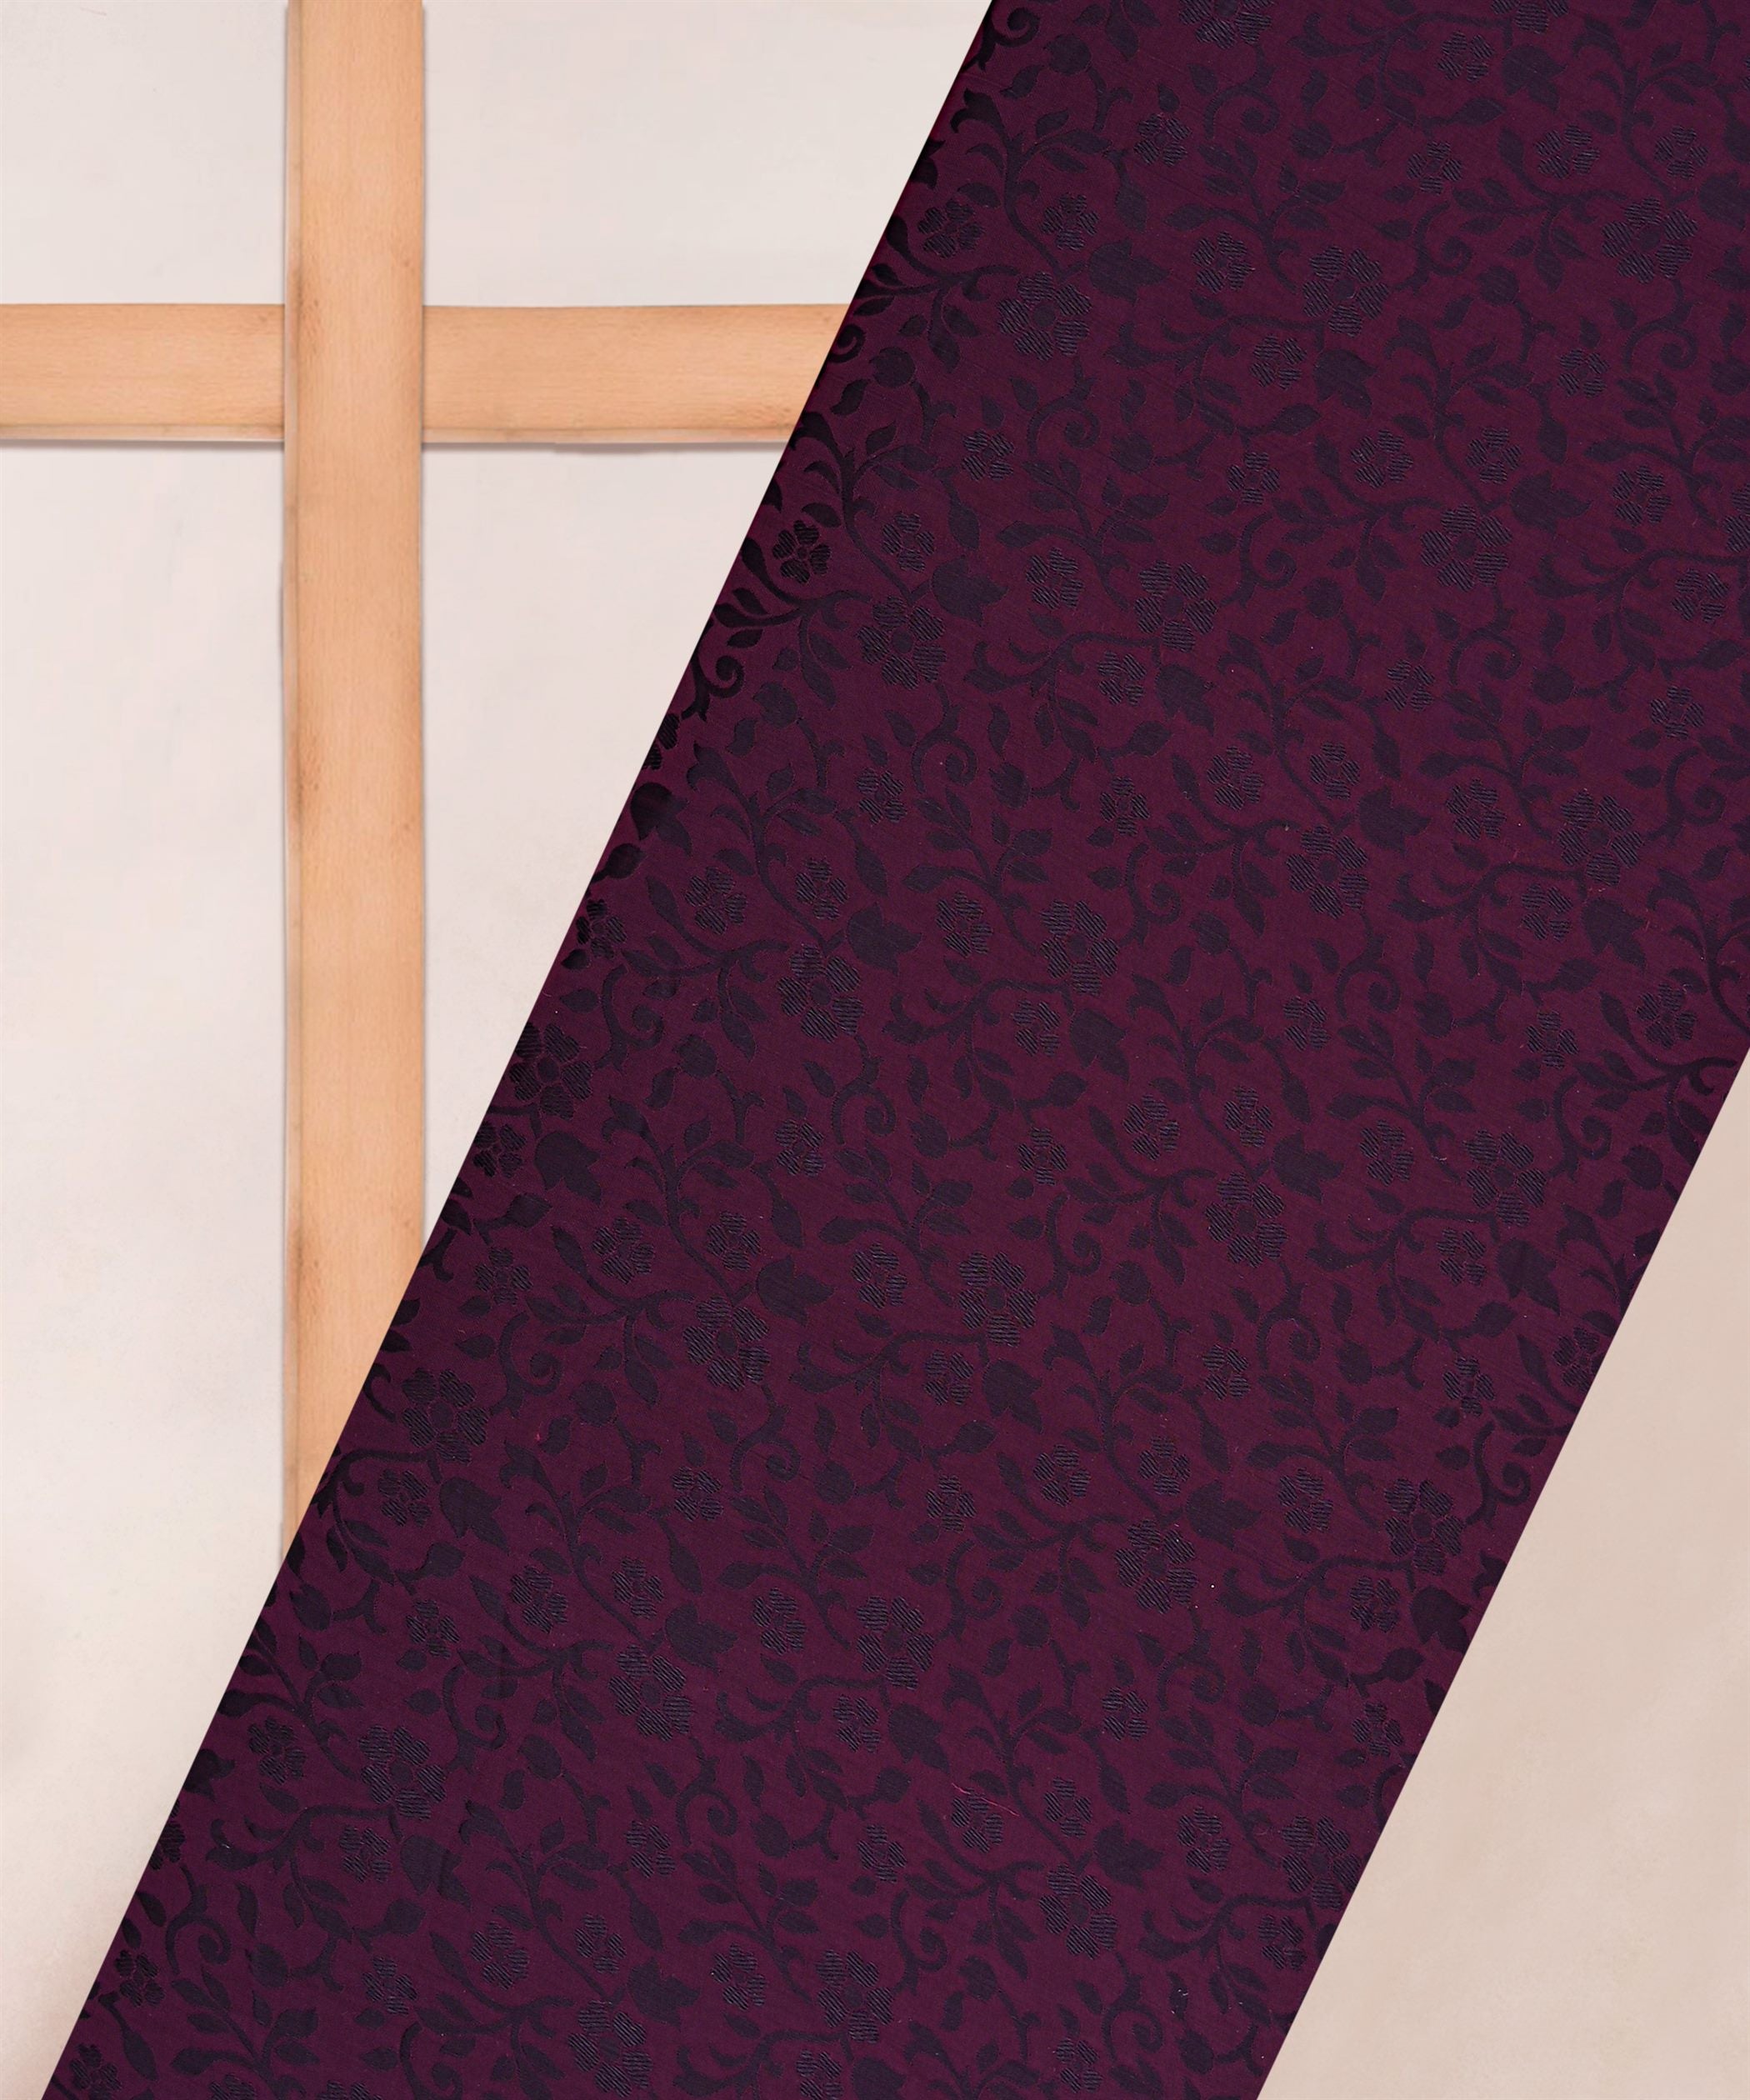 Purple Pink Satin Chiffon Fabric with Self Jacquard